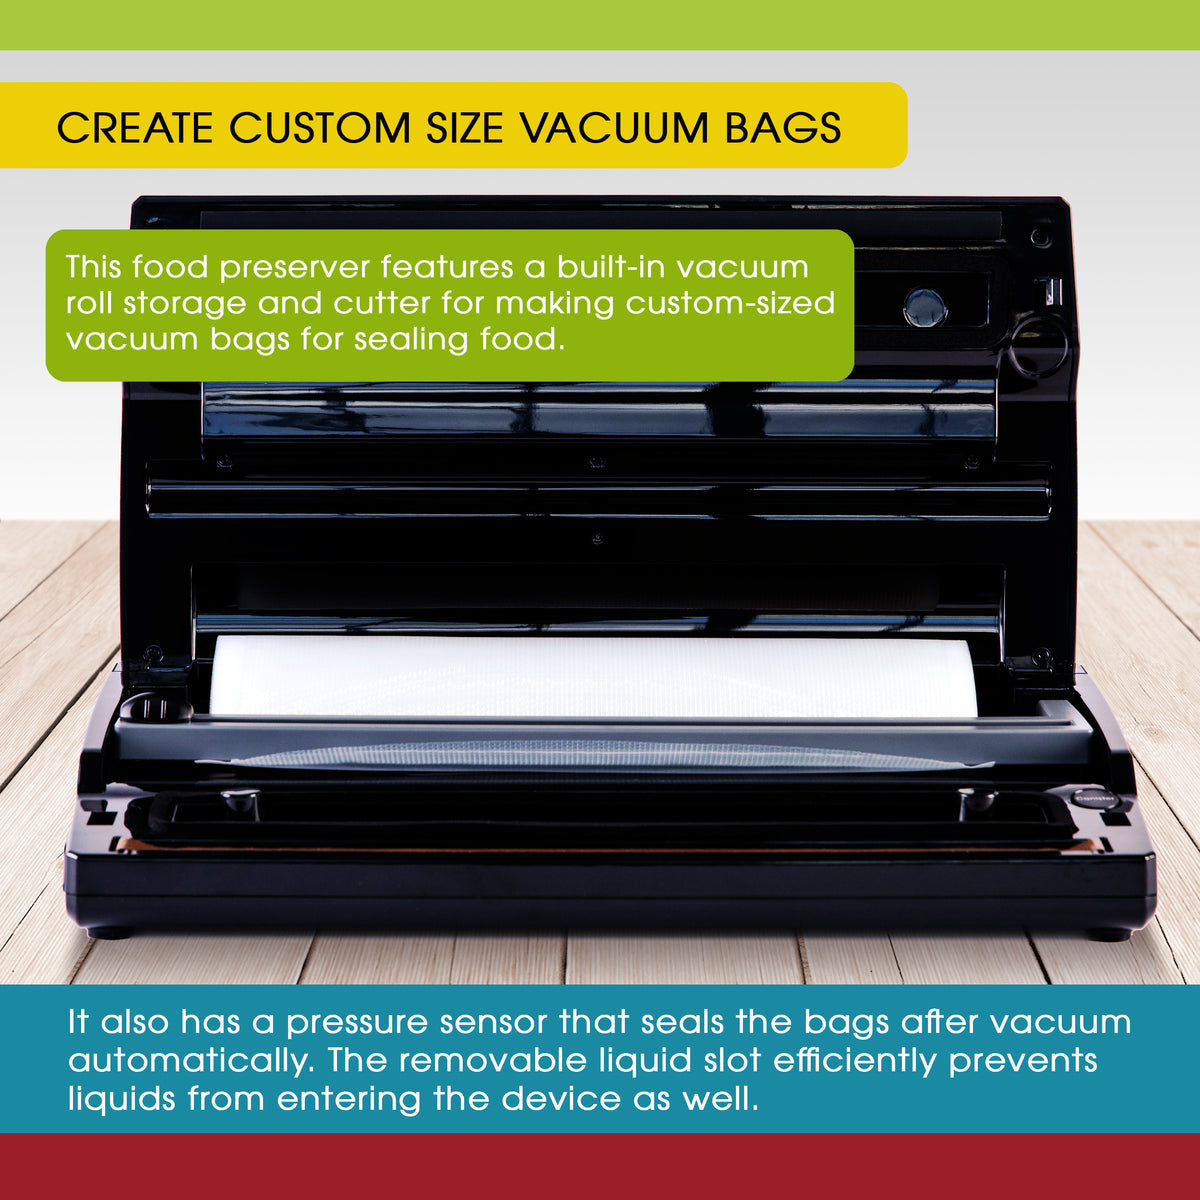 [5 mil Food Vacuum Bags] Vesta Precision Premium PreCut Vacuum Sealer Bags  - 8 x 10 Inches, 44 count, 5 Mil Thickness, Puncture Resistant, Ideal for